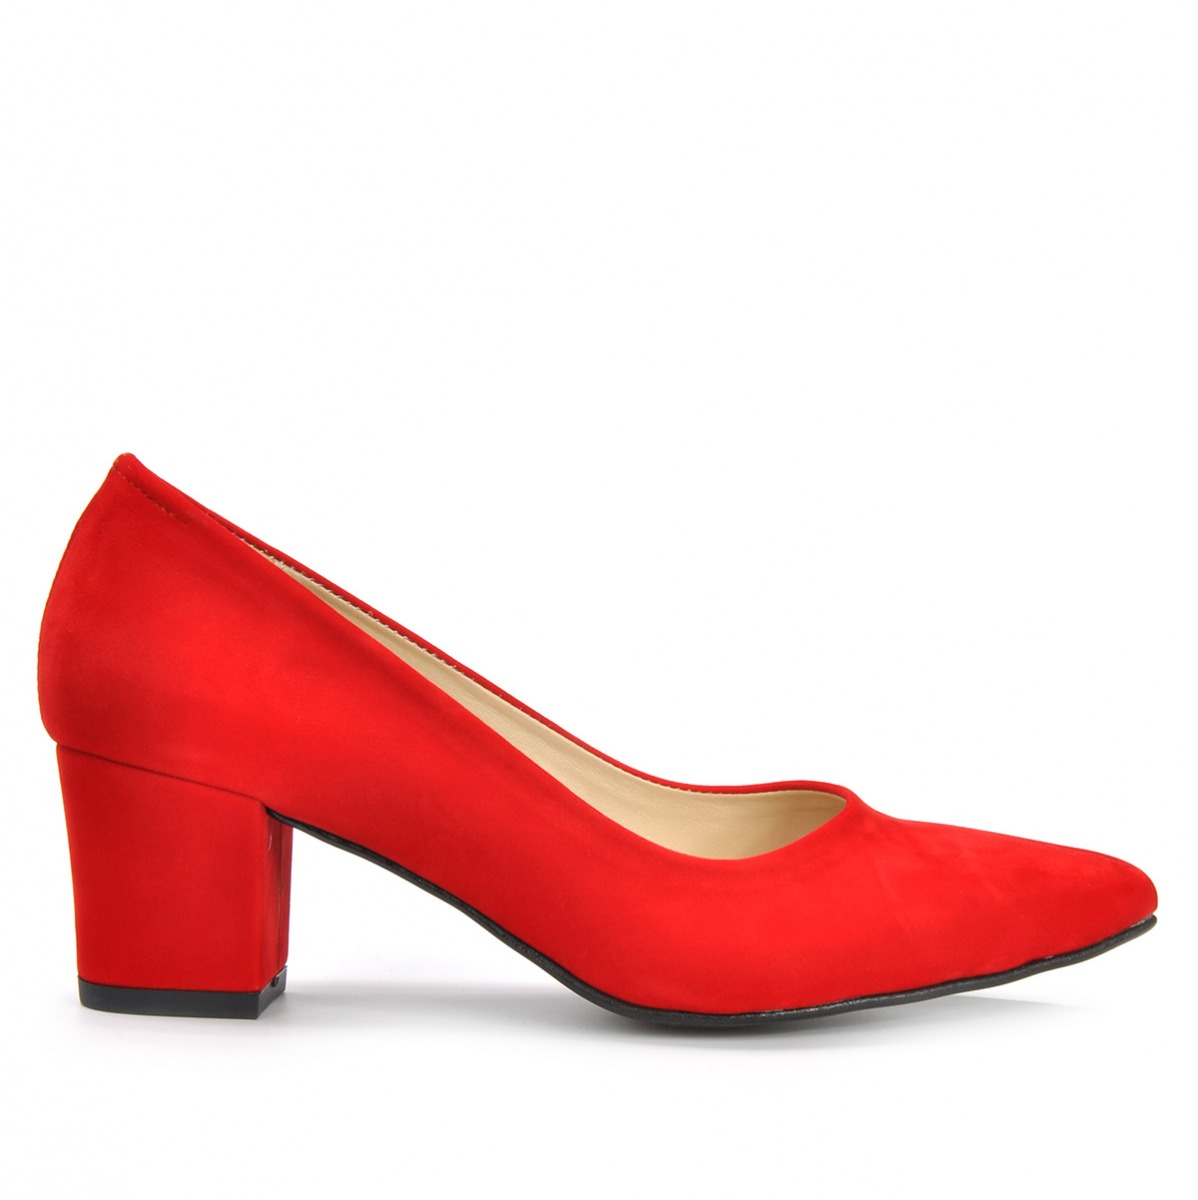 Flo Kadın  Kırmızı-Süet Klasik Topuklu Ayakkabı VZN19-111K. 2